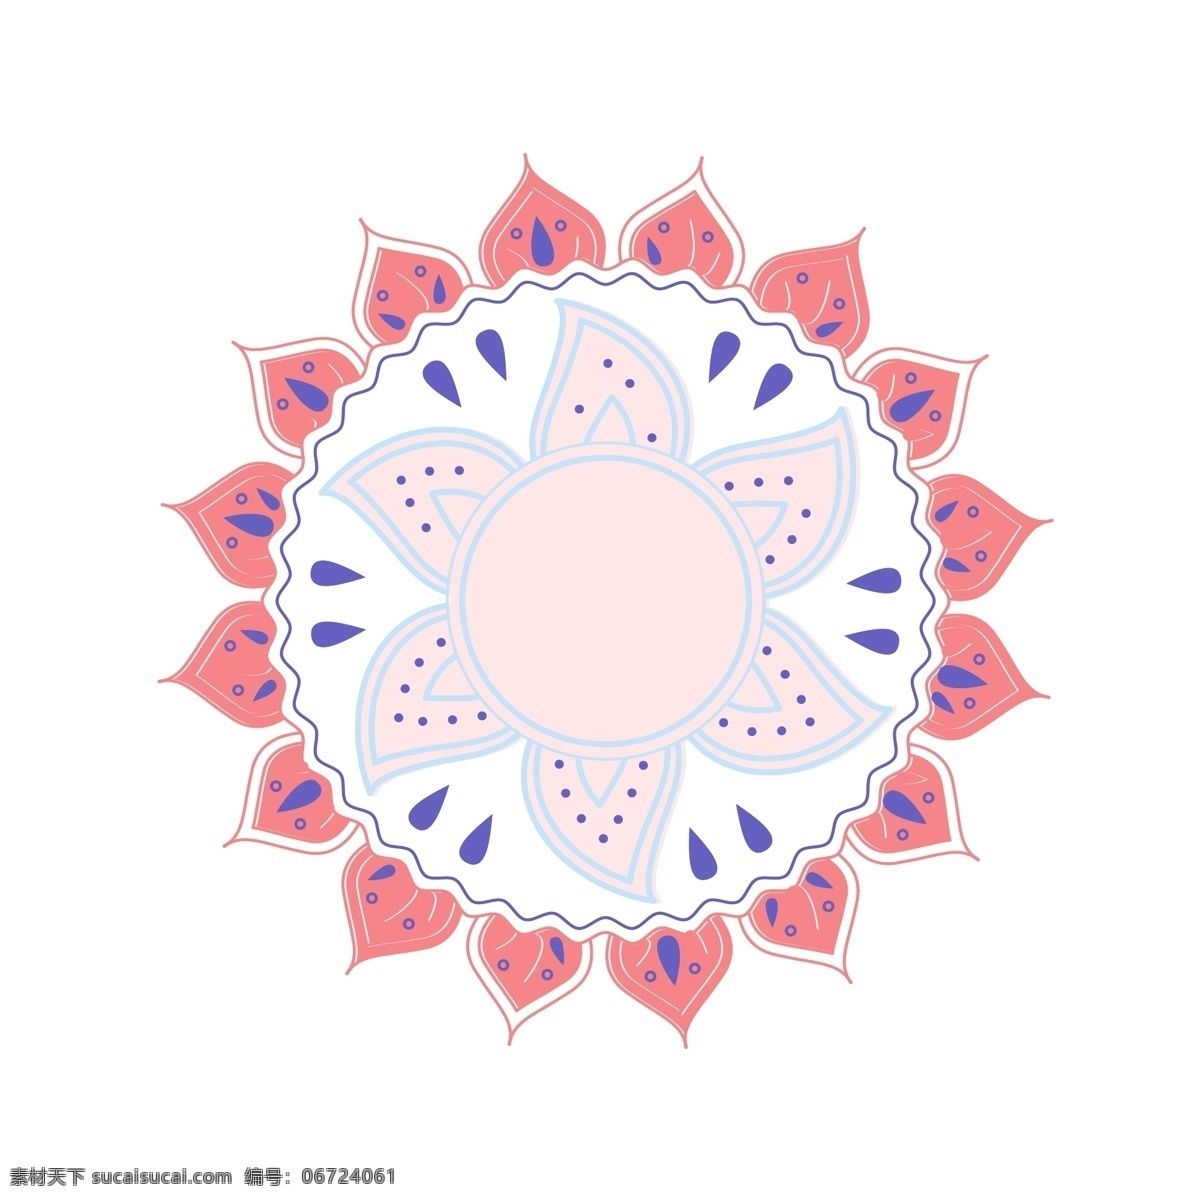 线性 世界 装饰 纹理 叶子 花朵 蓝色 粉色 花 几何